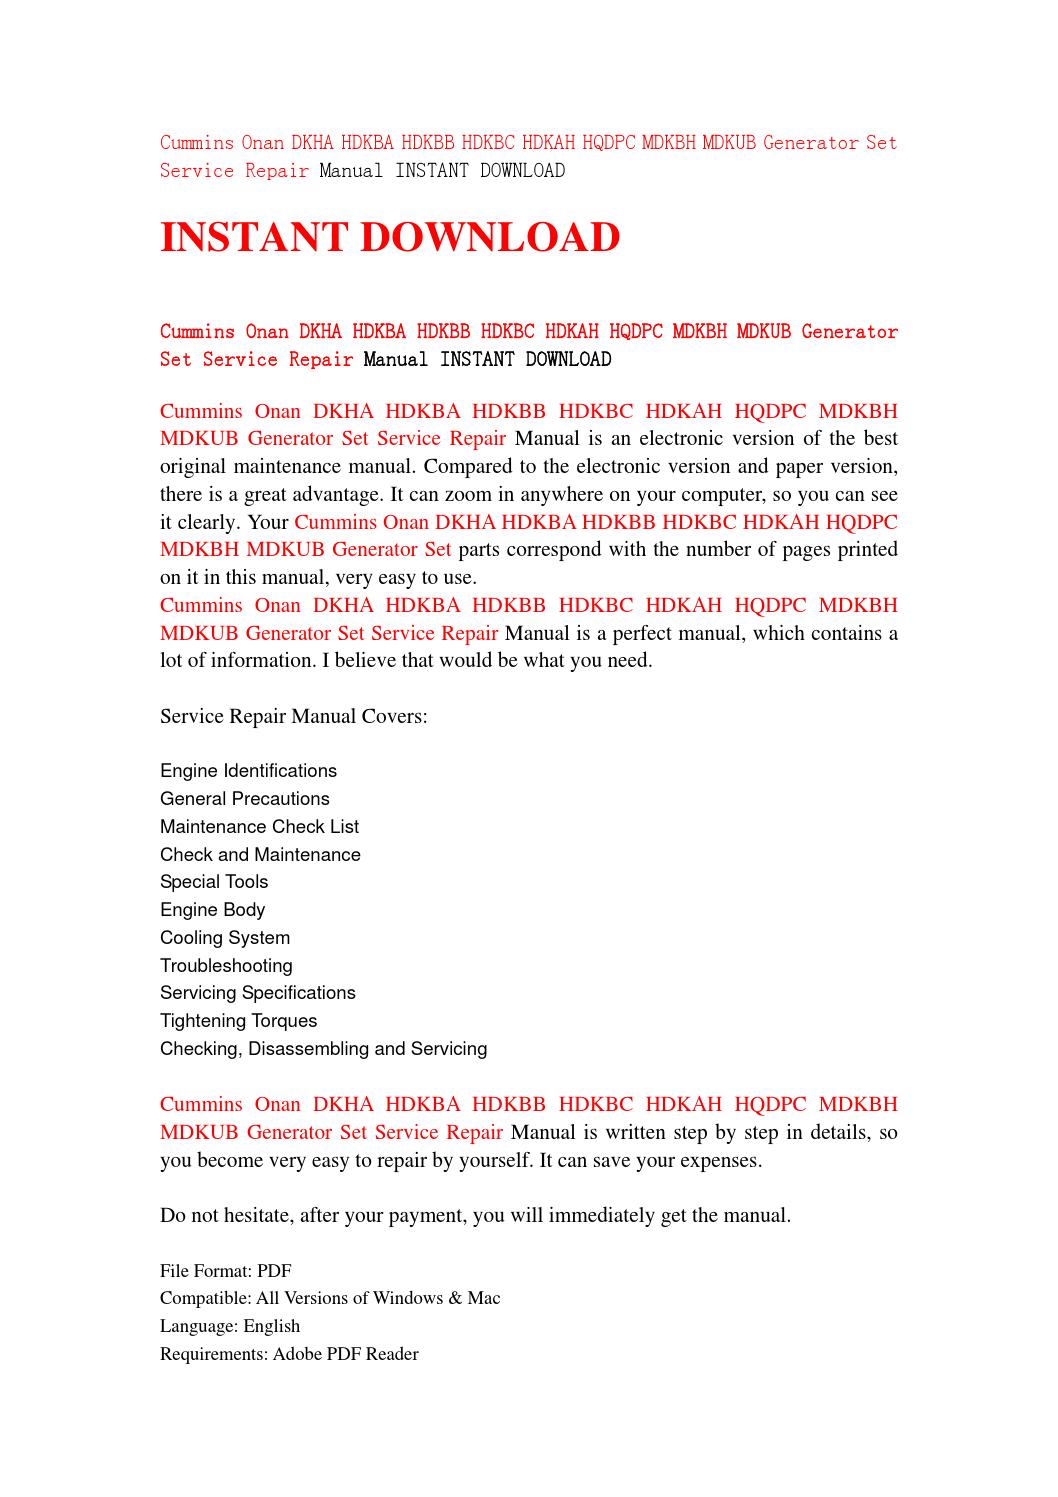 Onan Repair Manual Download